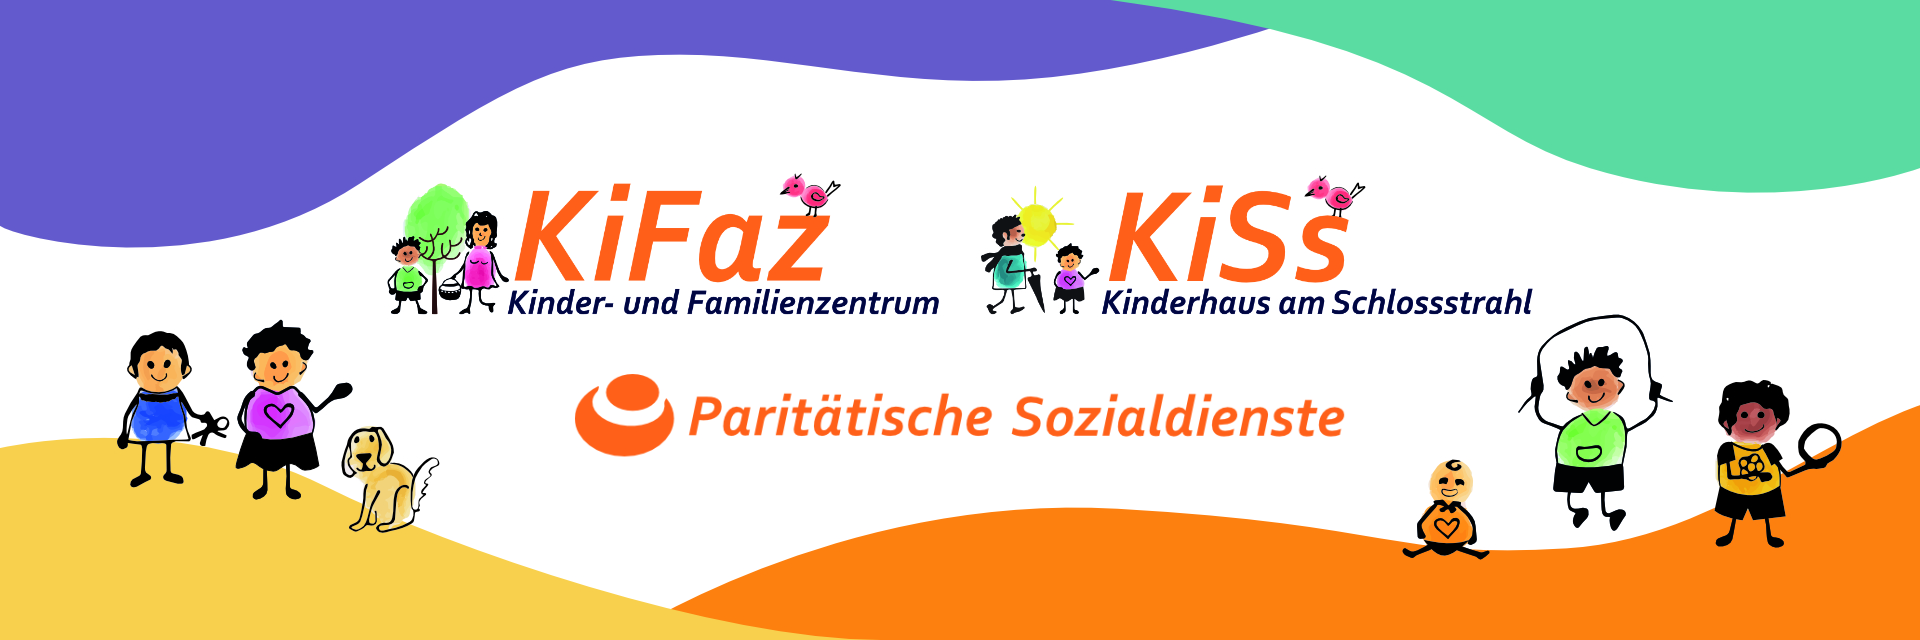 Logos der Kindertagesstätten